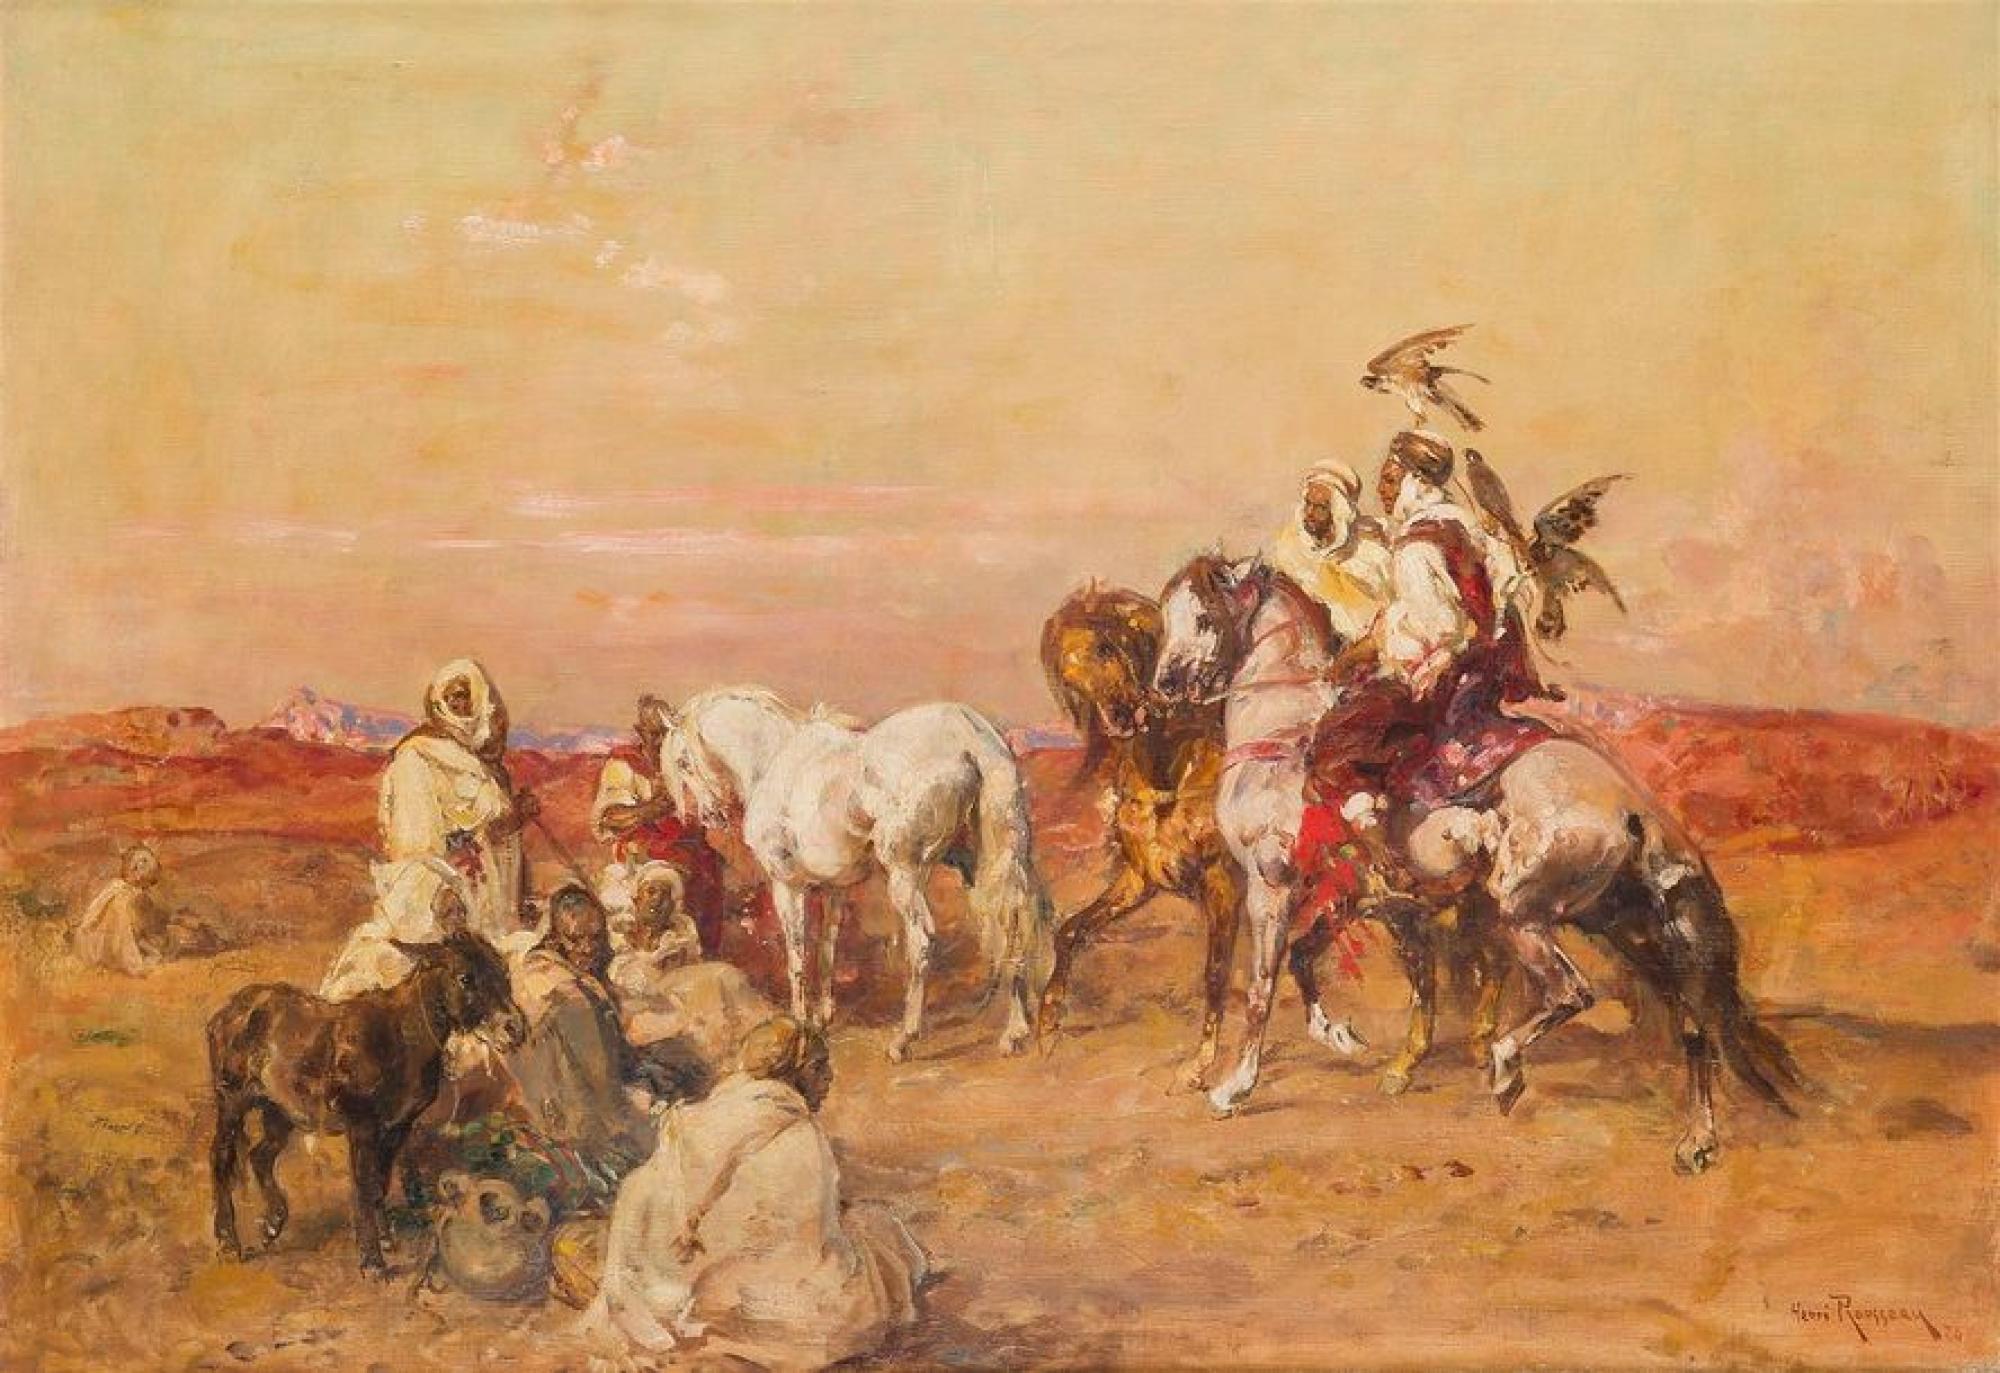 La charge. Tableau de bataille. par HOUSSAYE (Henri): Relié. (1894